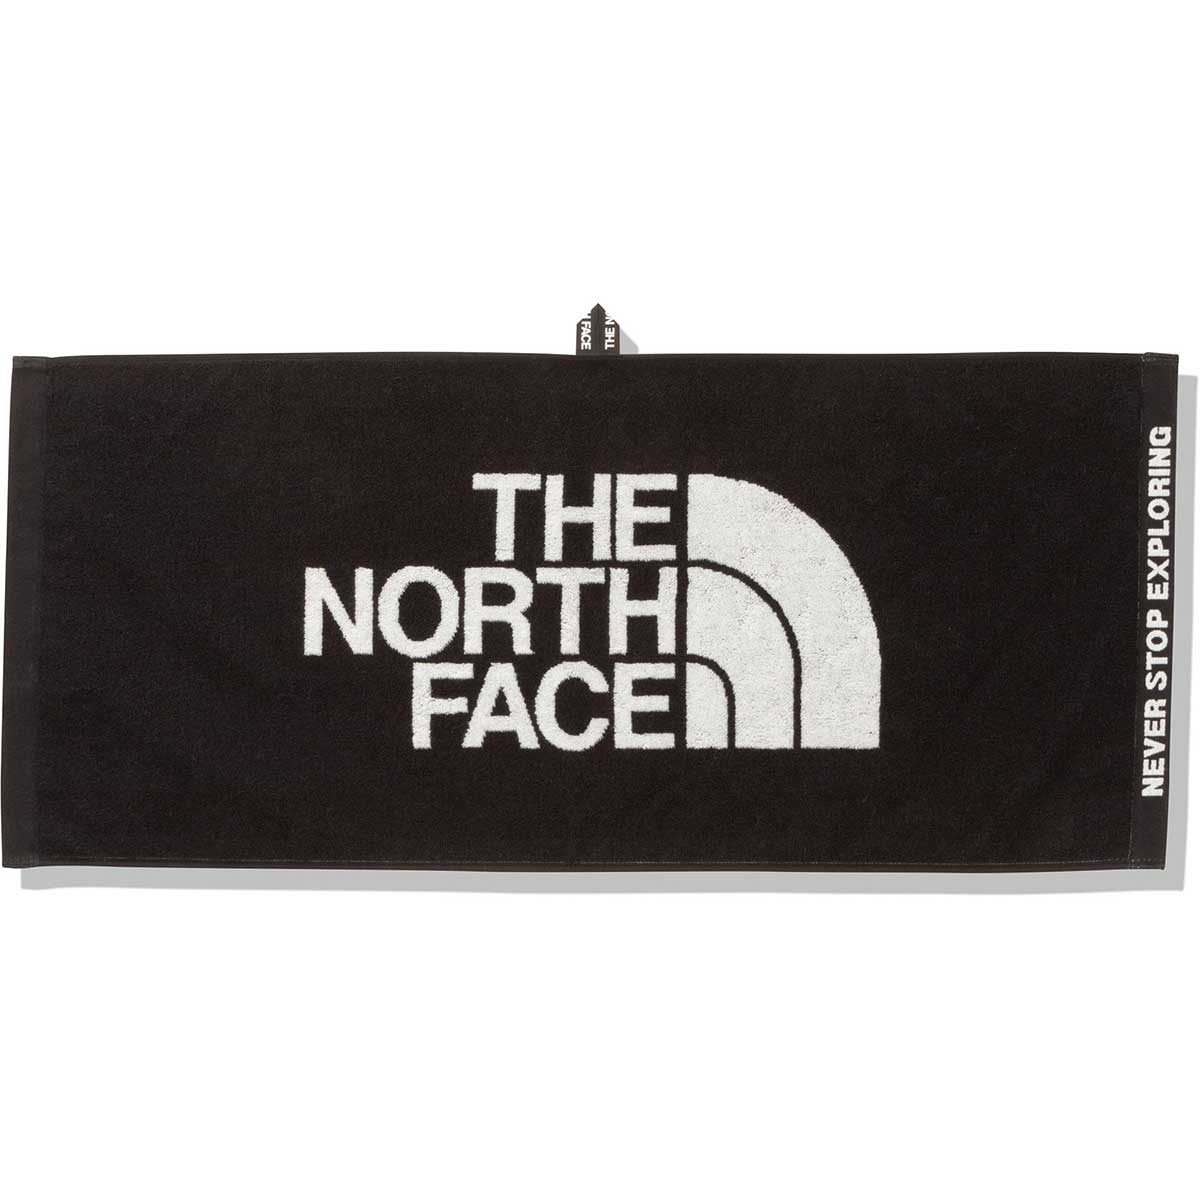 ノースフェイス THE NORTH FACE アウトドア カジュアル アクセサリー コンフォート コットン タオル M NN22101-K メンズ レディース ユニセックス 24SS 春夏